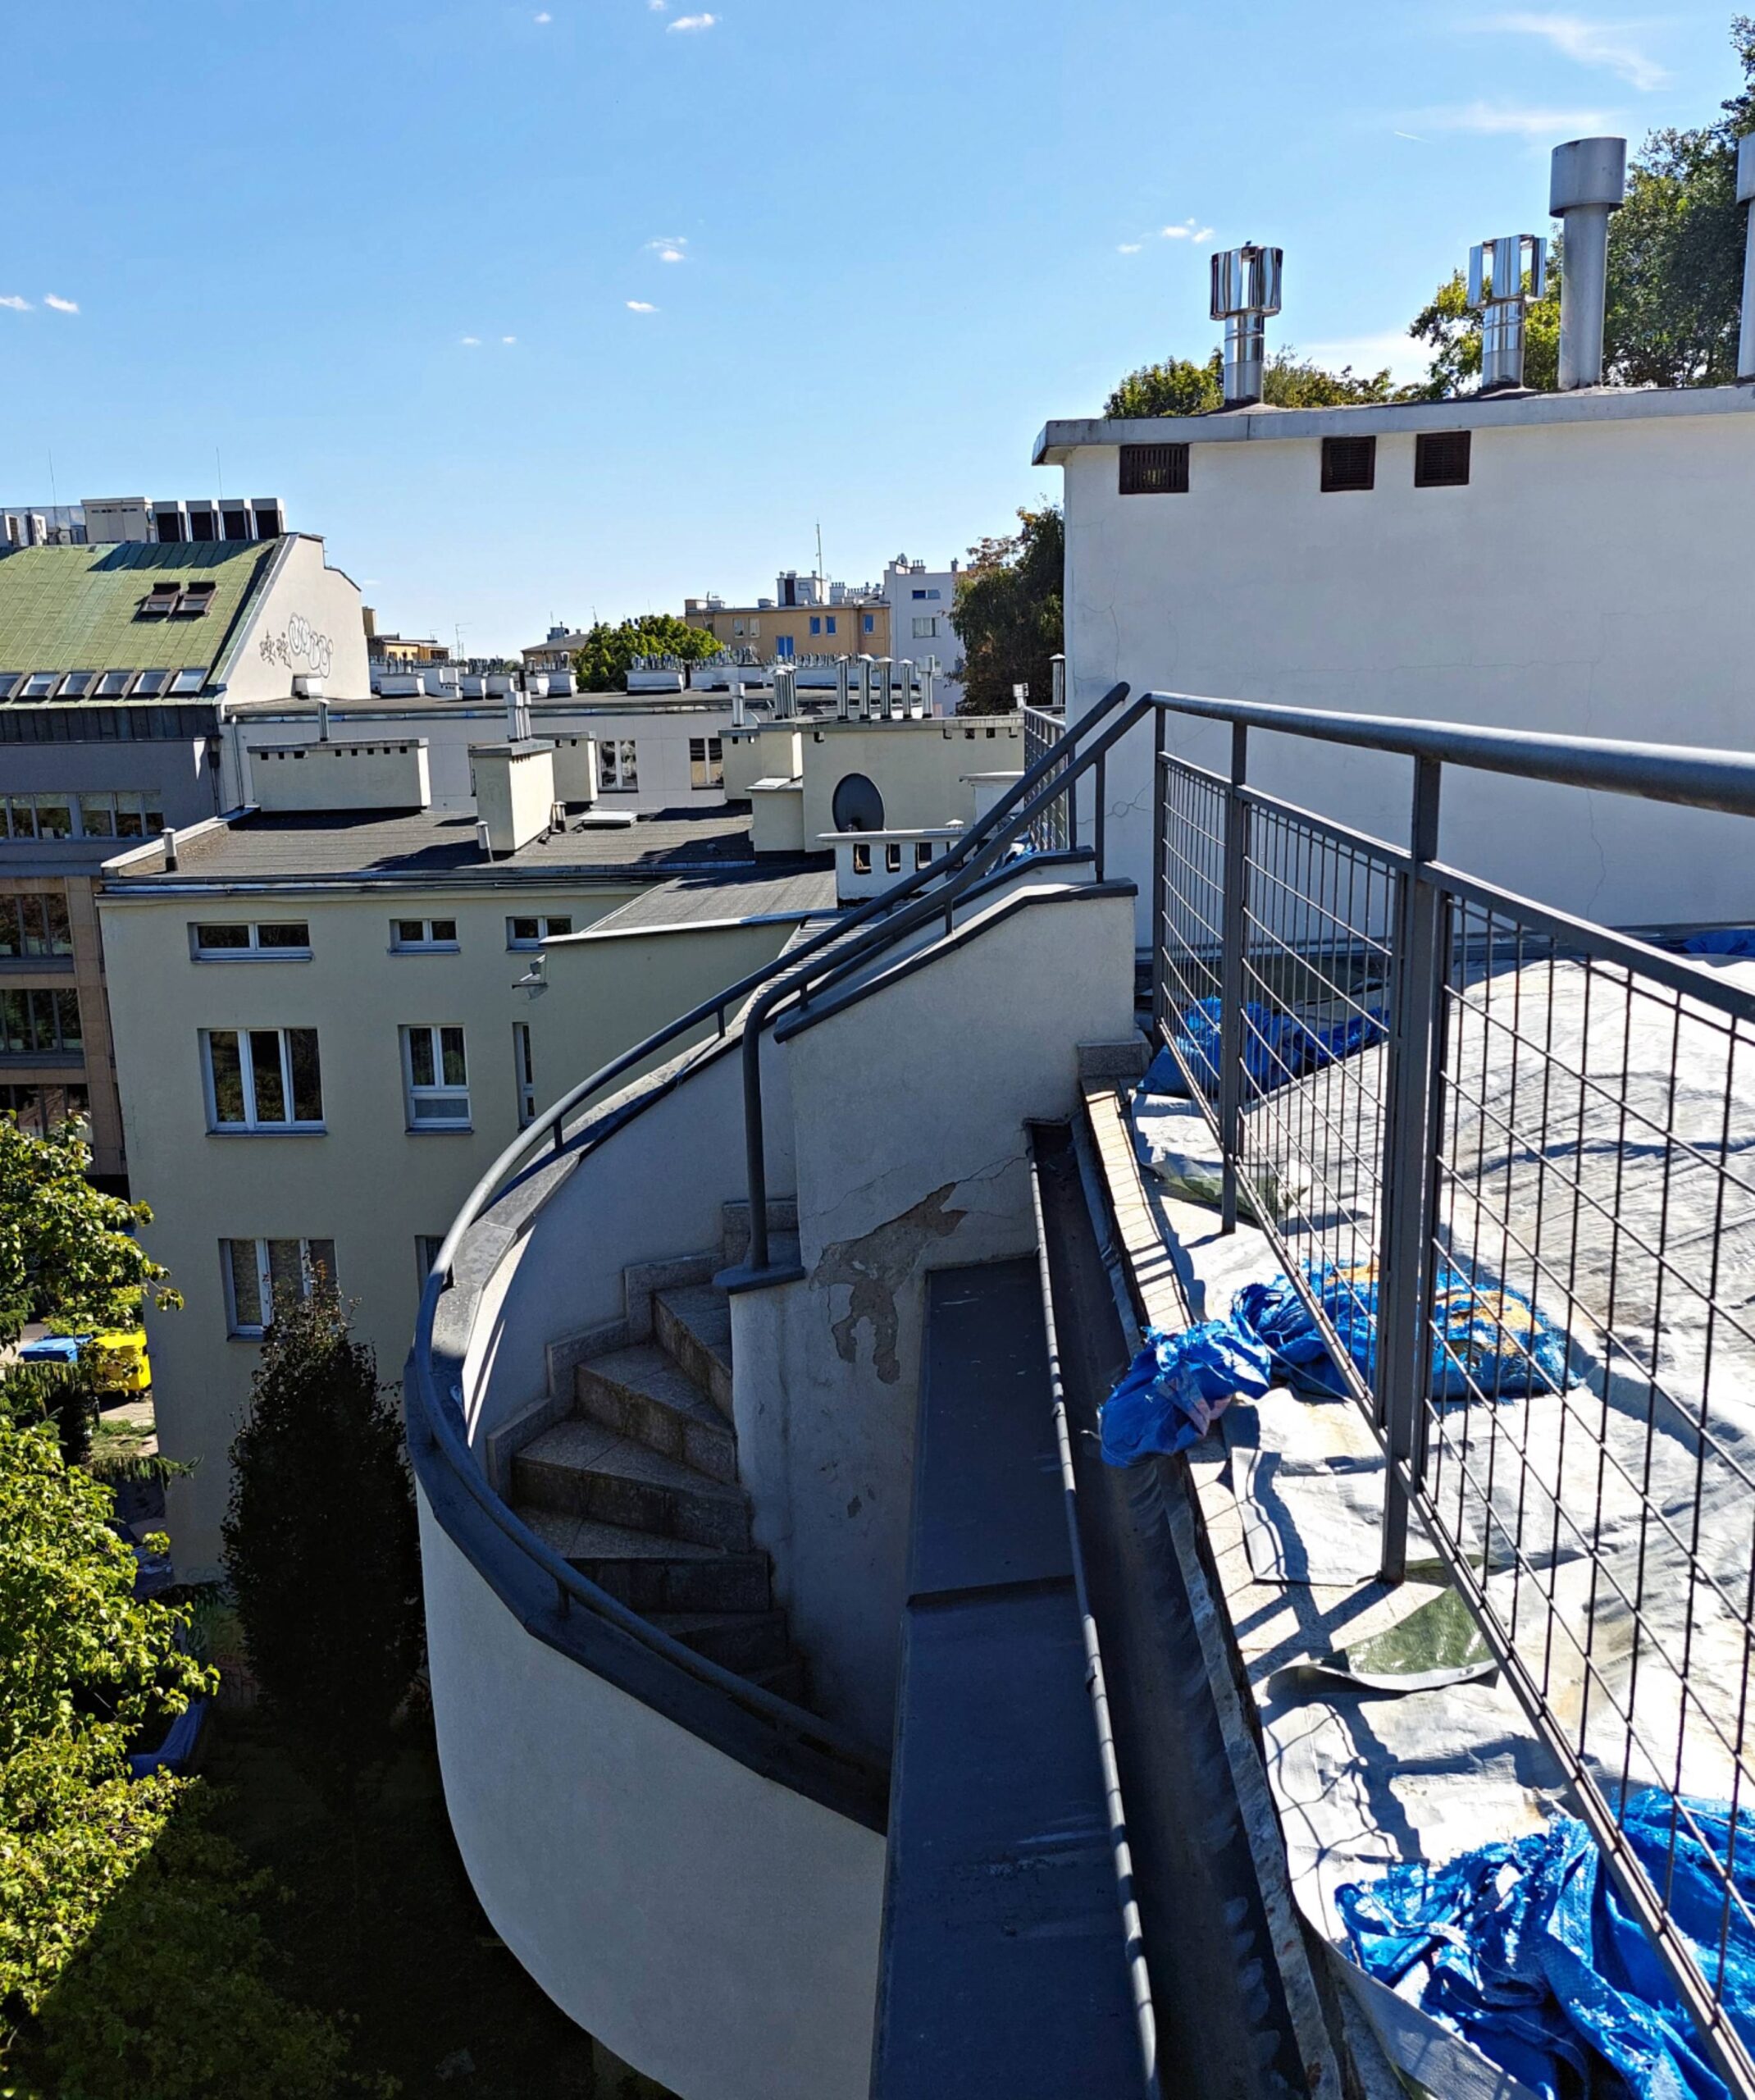 Elewacja tylna, Spiralne schody na taras, na zewnątrz budynku. Fot. Aleksandra Bocianowska 2022 r., źródło: AOD III.